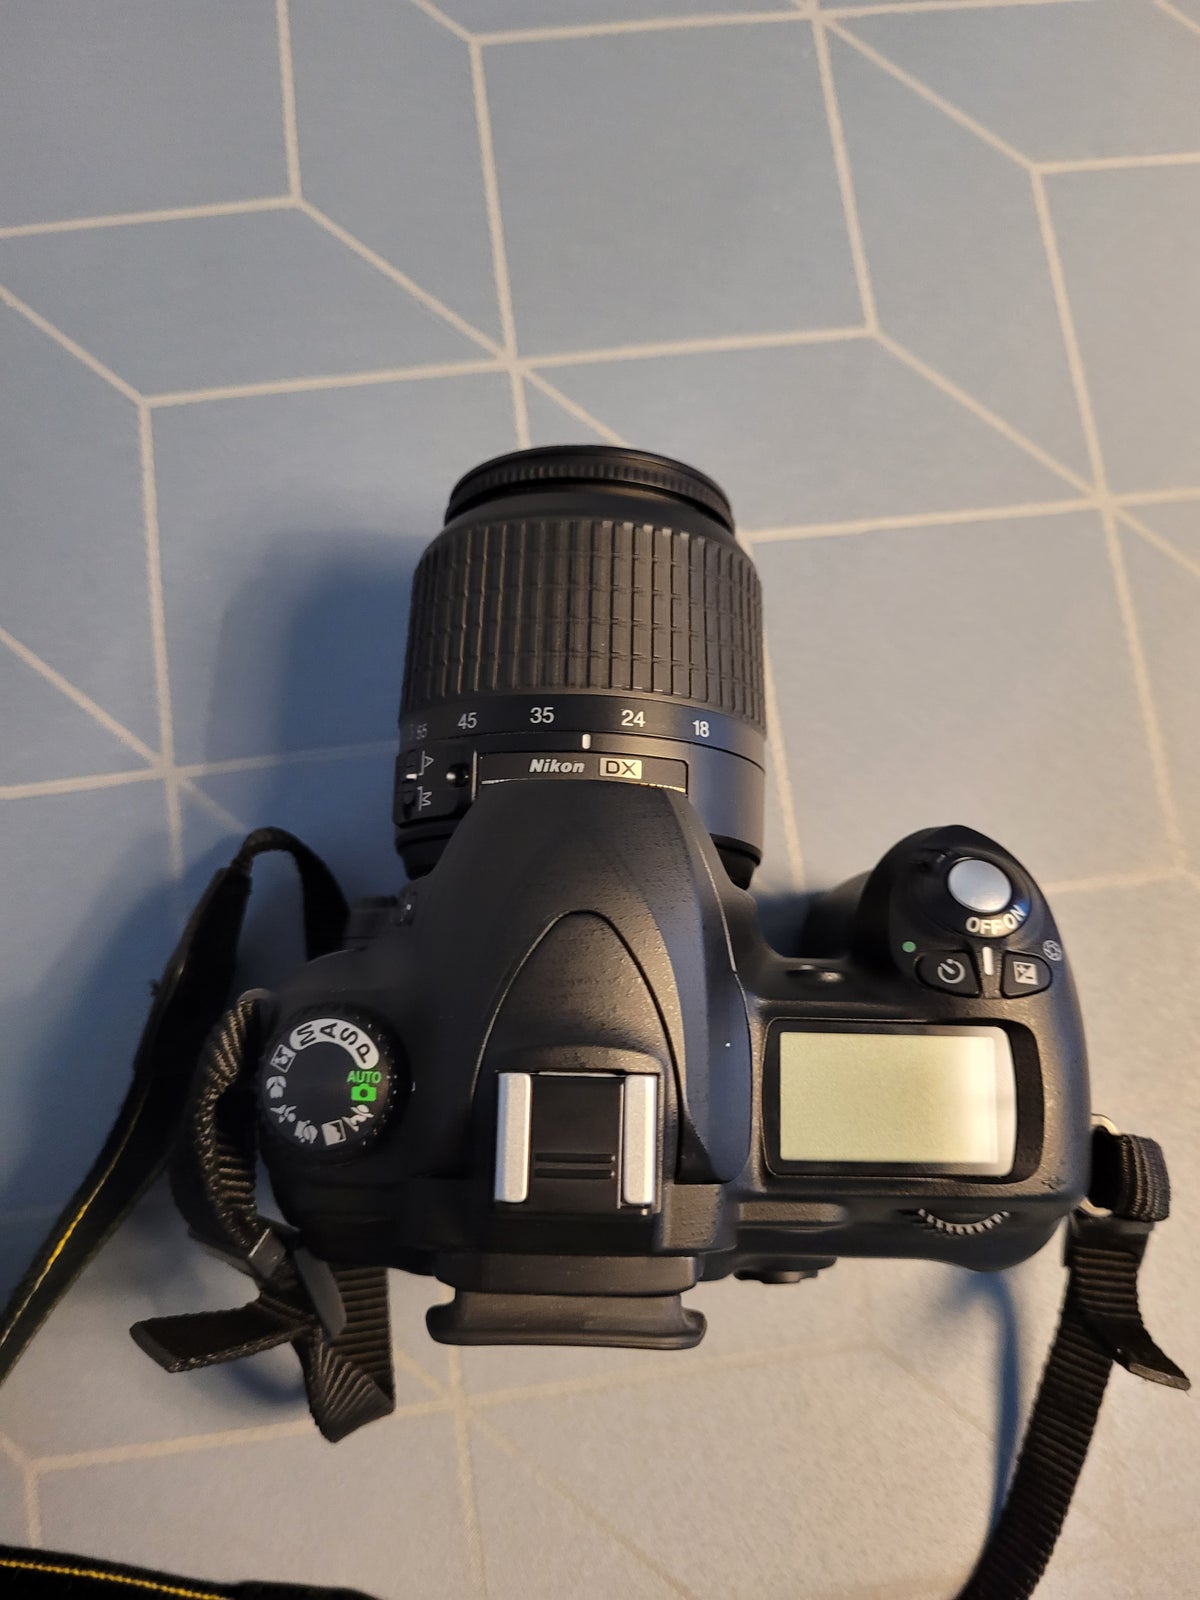 Nikon D50, spejlrefleks, 6.1 megapixels